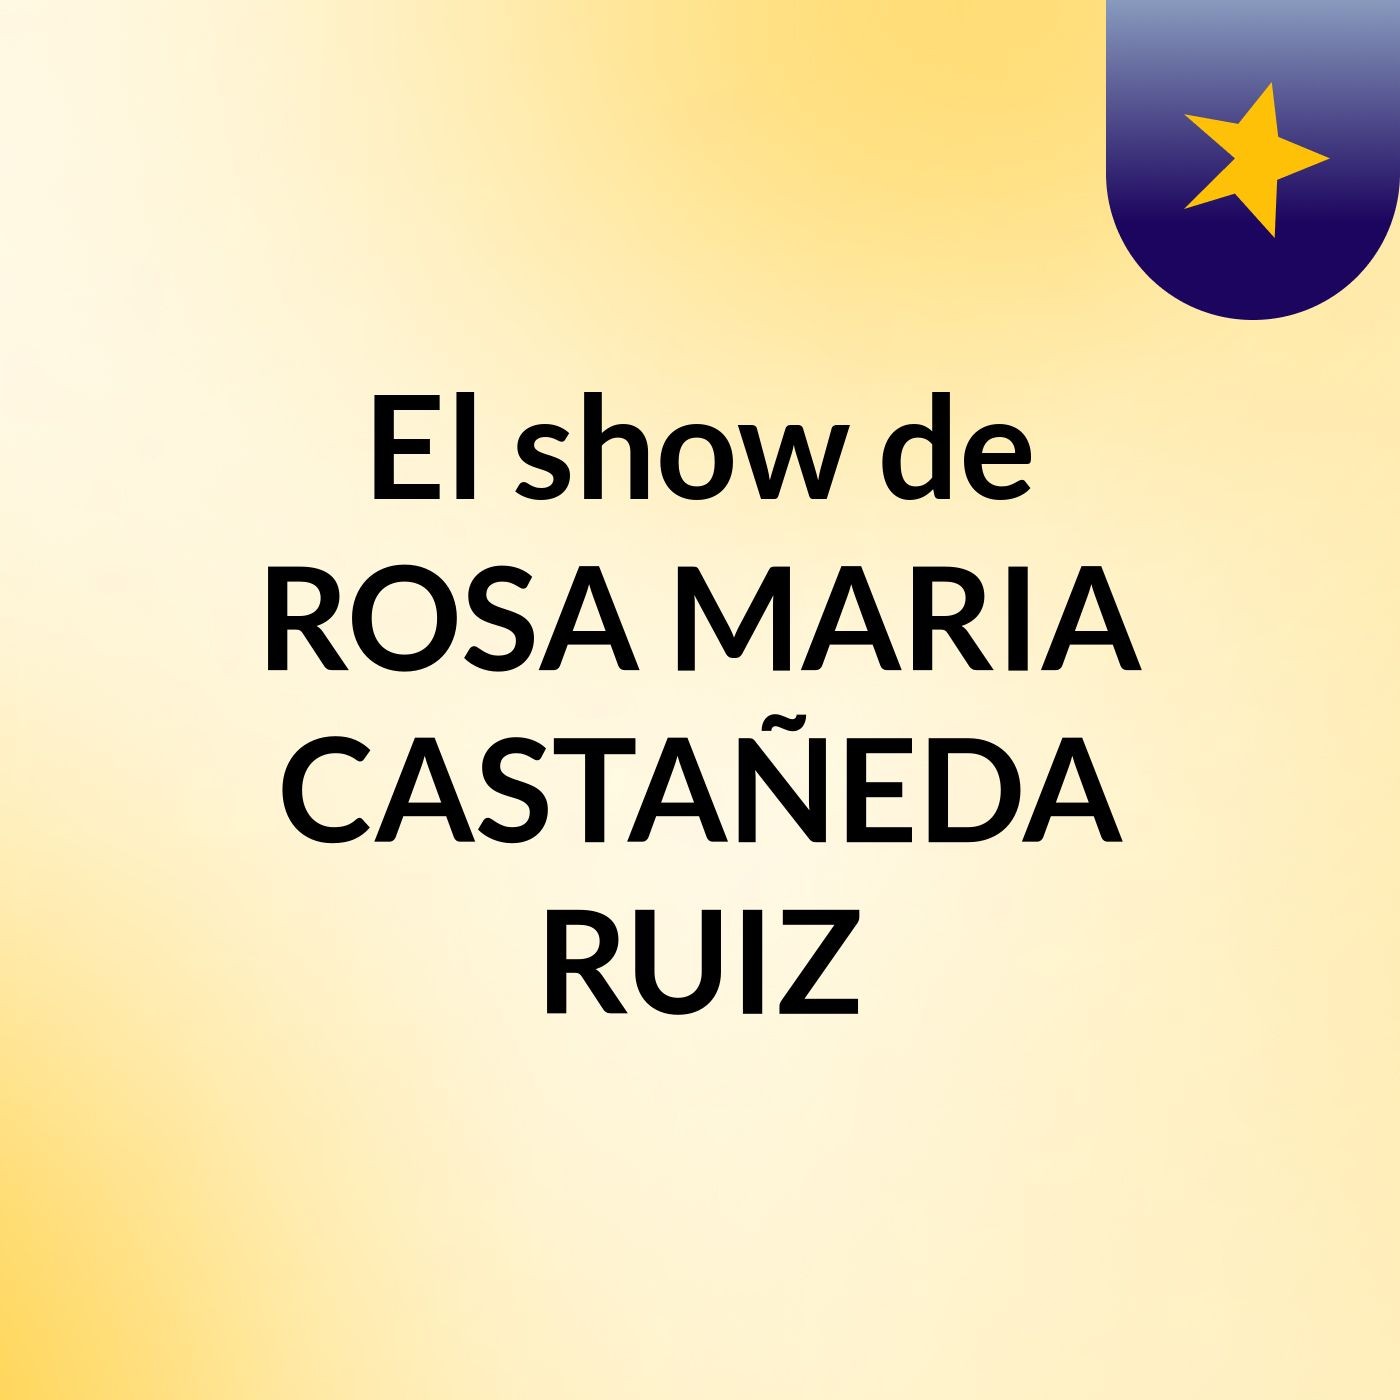 El show de ROSA MARIA CASTAÑEDA RUIZ